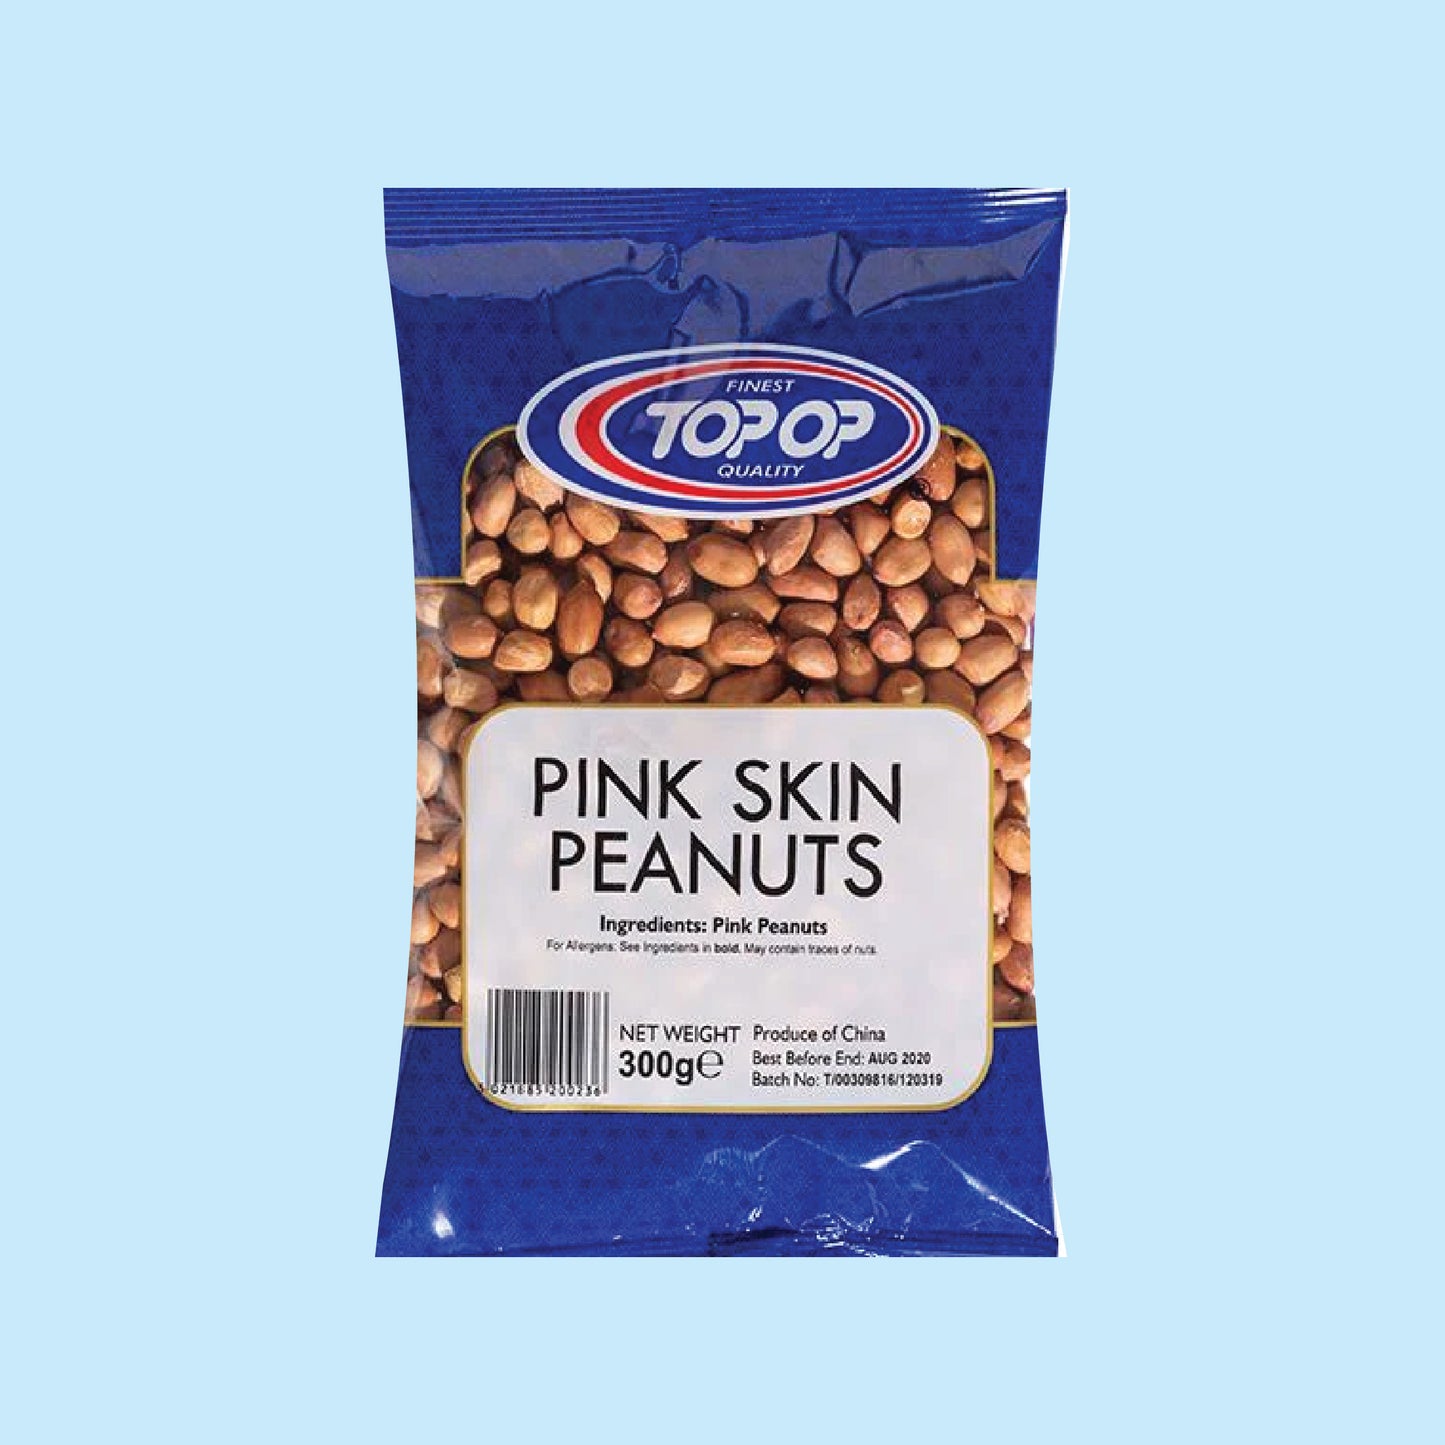 Top-Op Pink Skin Peanuts